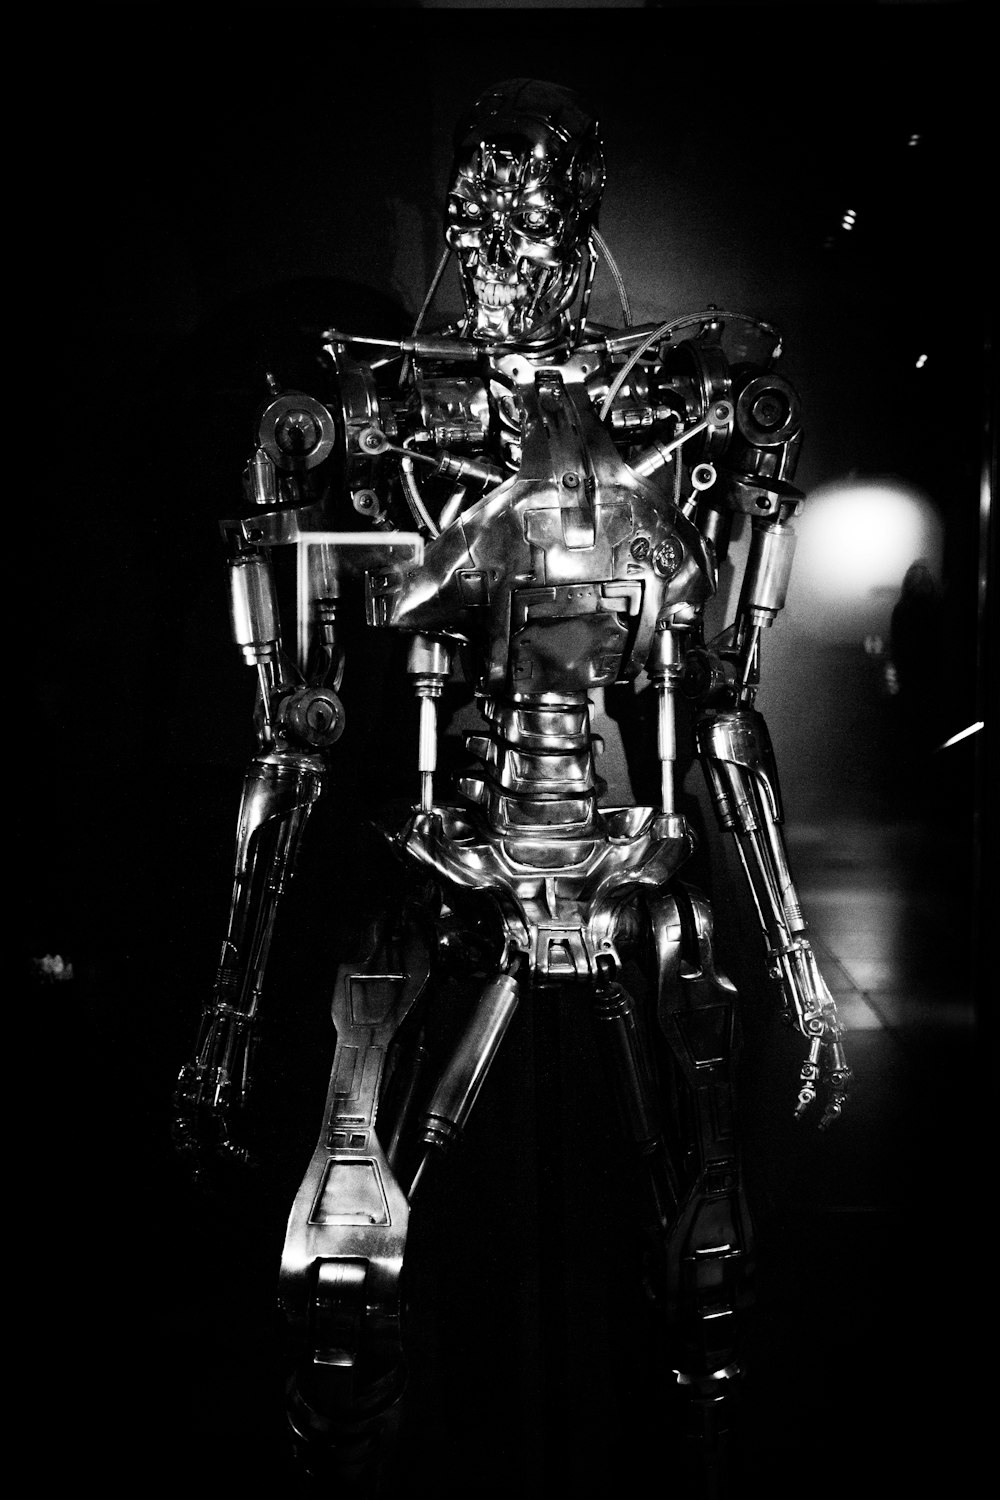 Ein Schwarz-Weiß-Foto eines Roboters